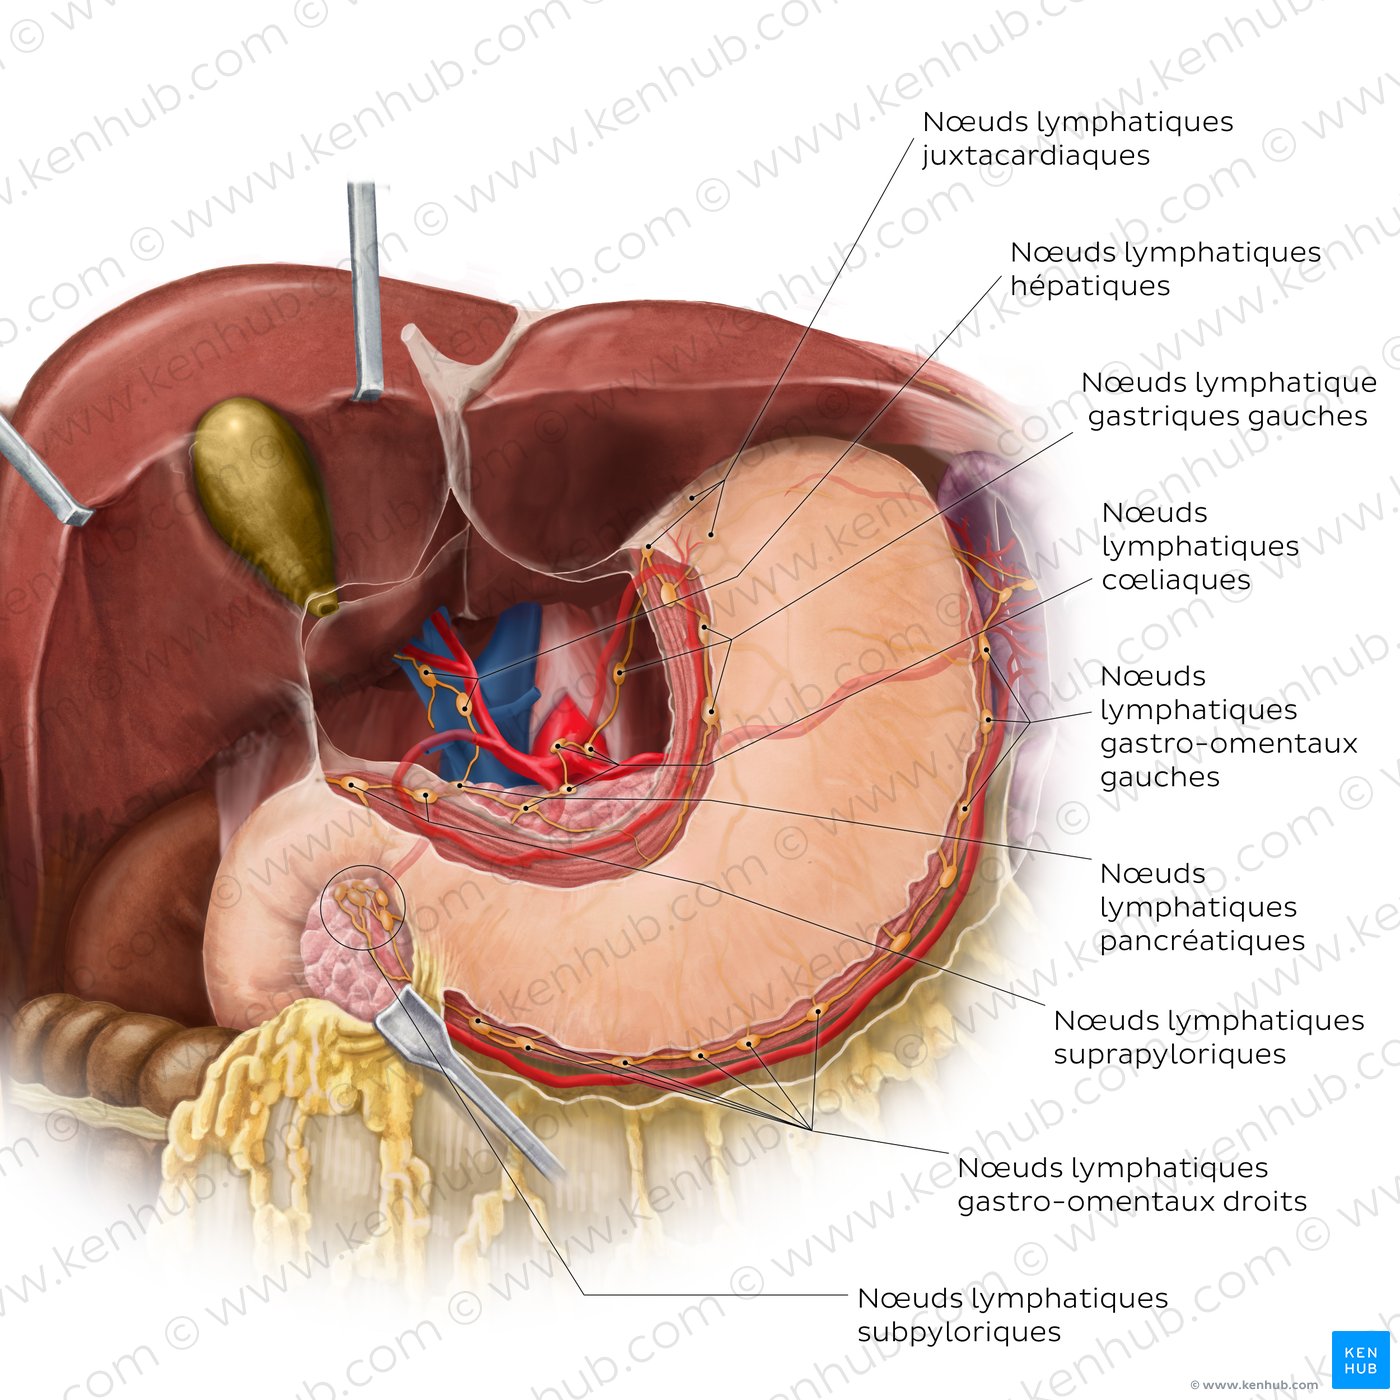 Nœuds et vaisseaux lymphatiques de l’estomac et du foie (vue antérieure)